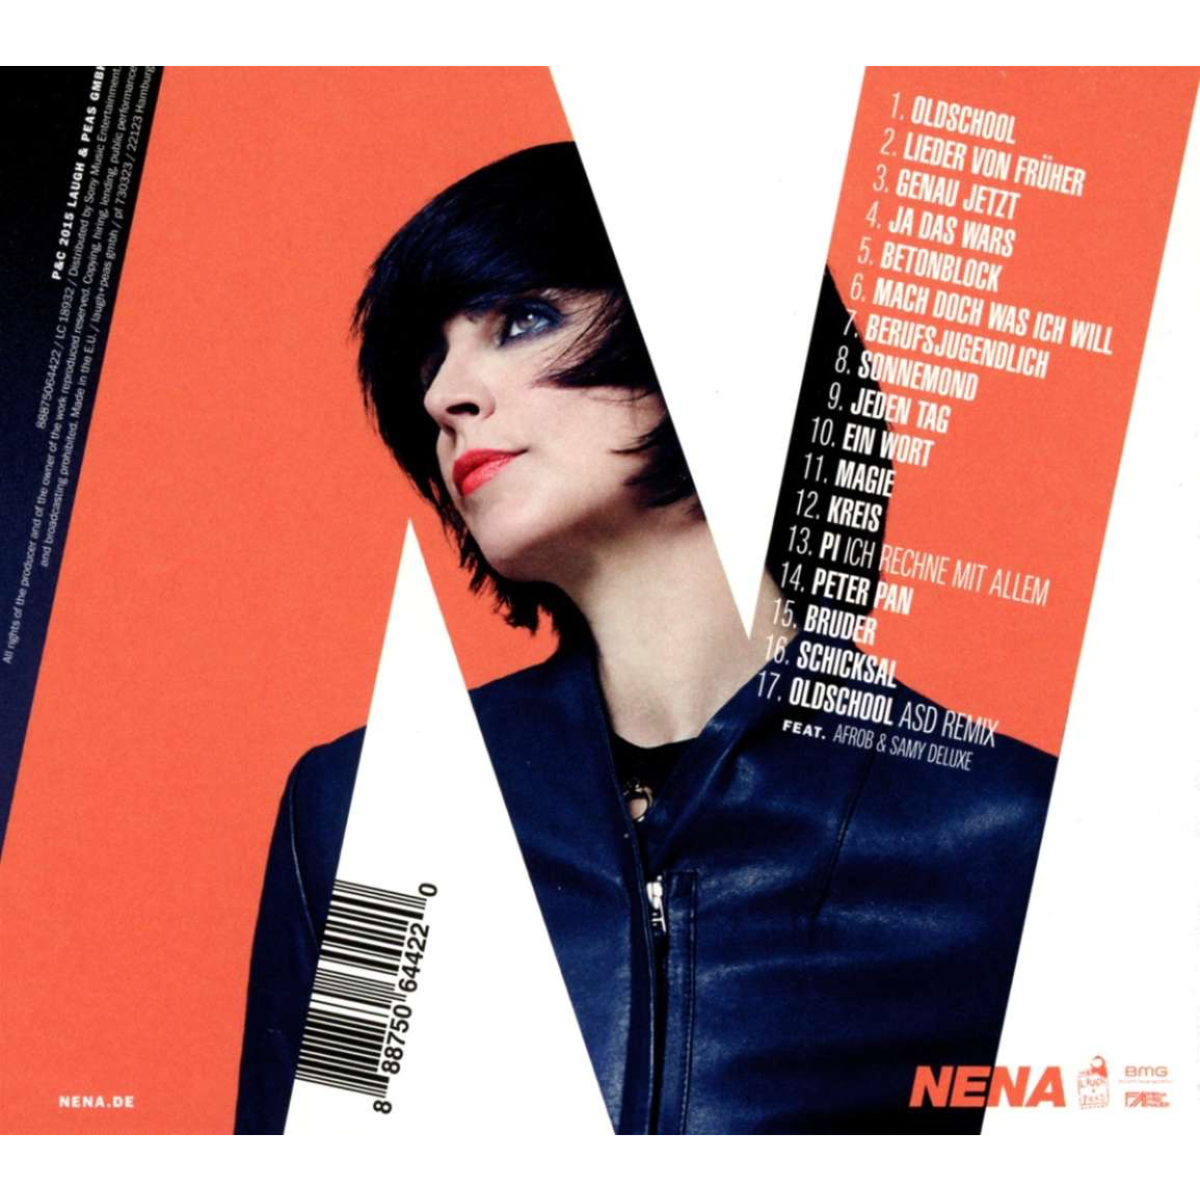 NENA - OLDSCHOOL (CD) (Deluxe Edition)